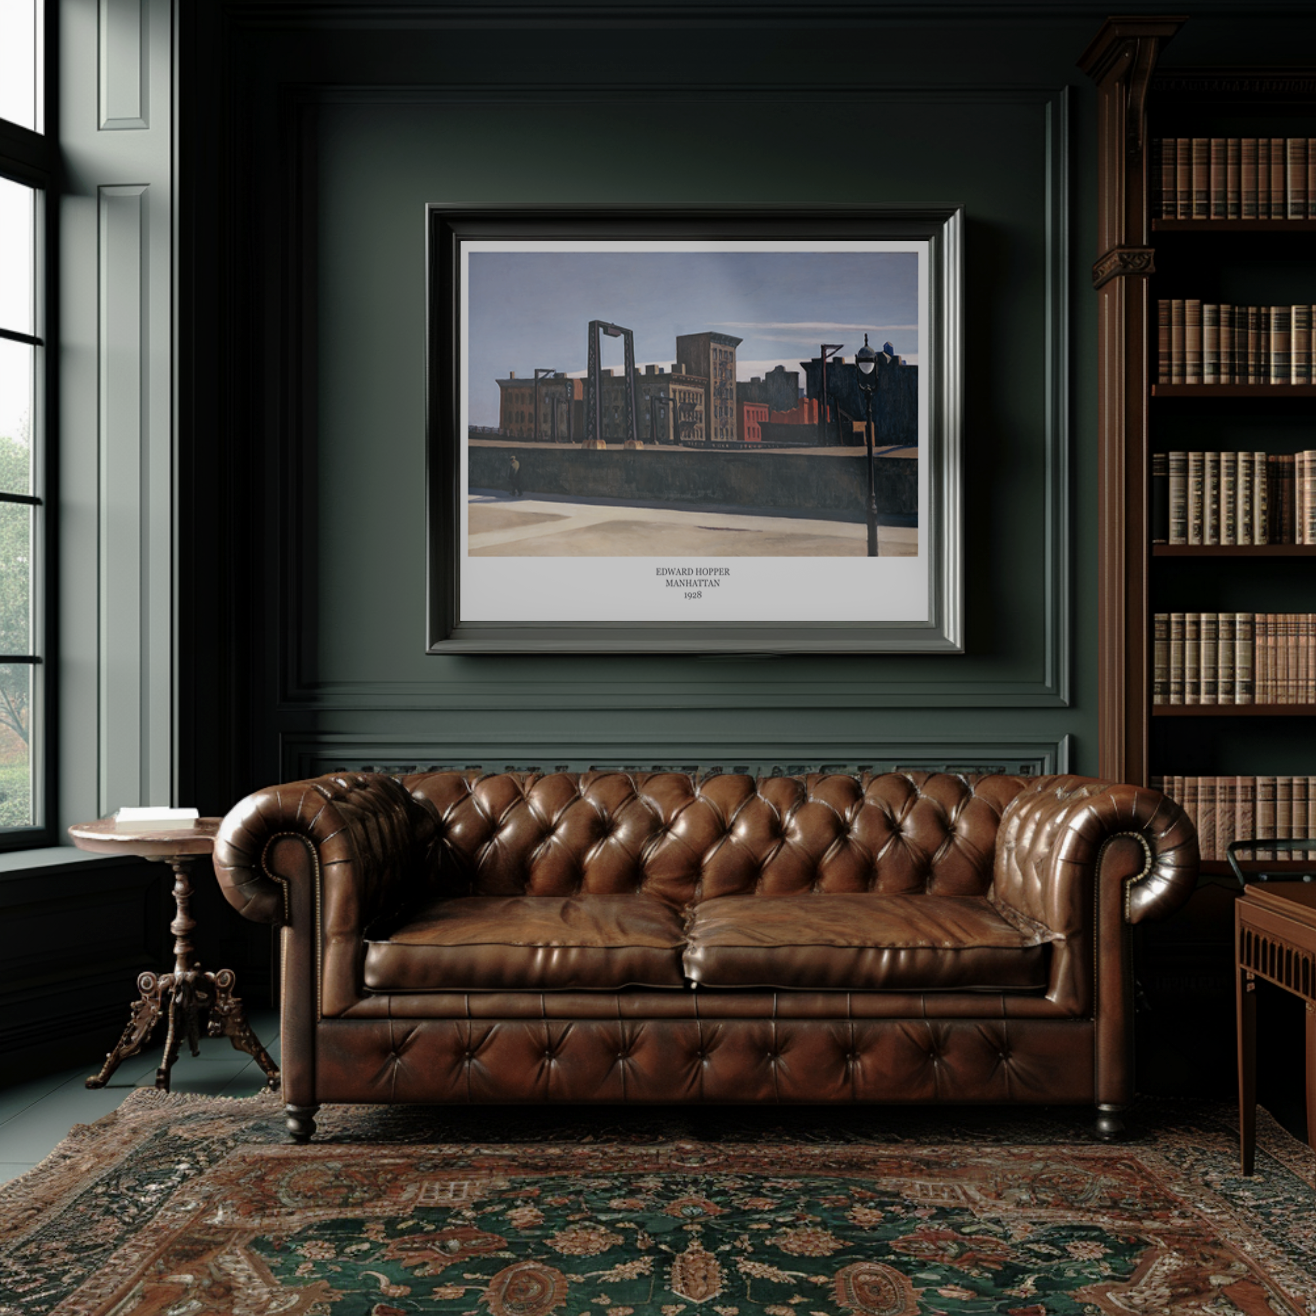 Edward Hopper Poster - Manhattan